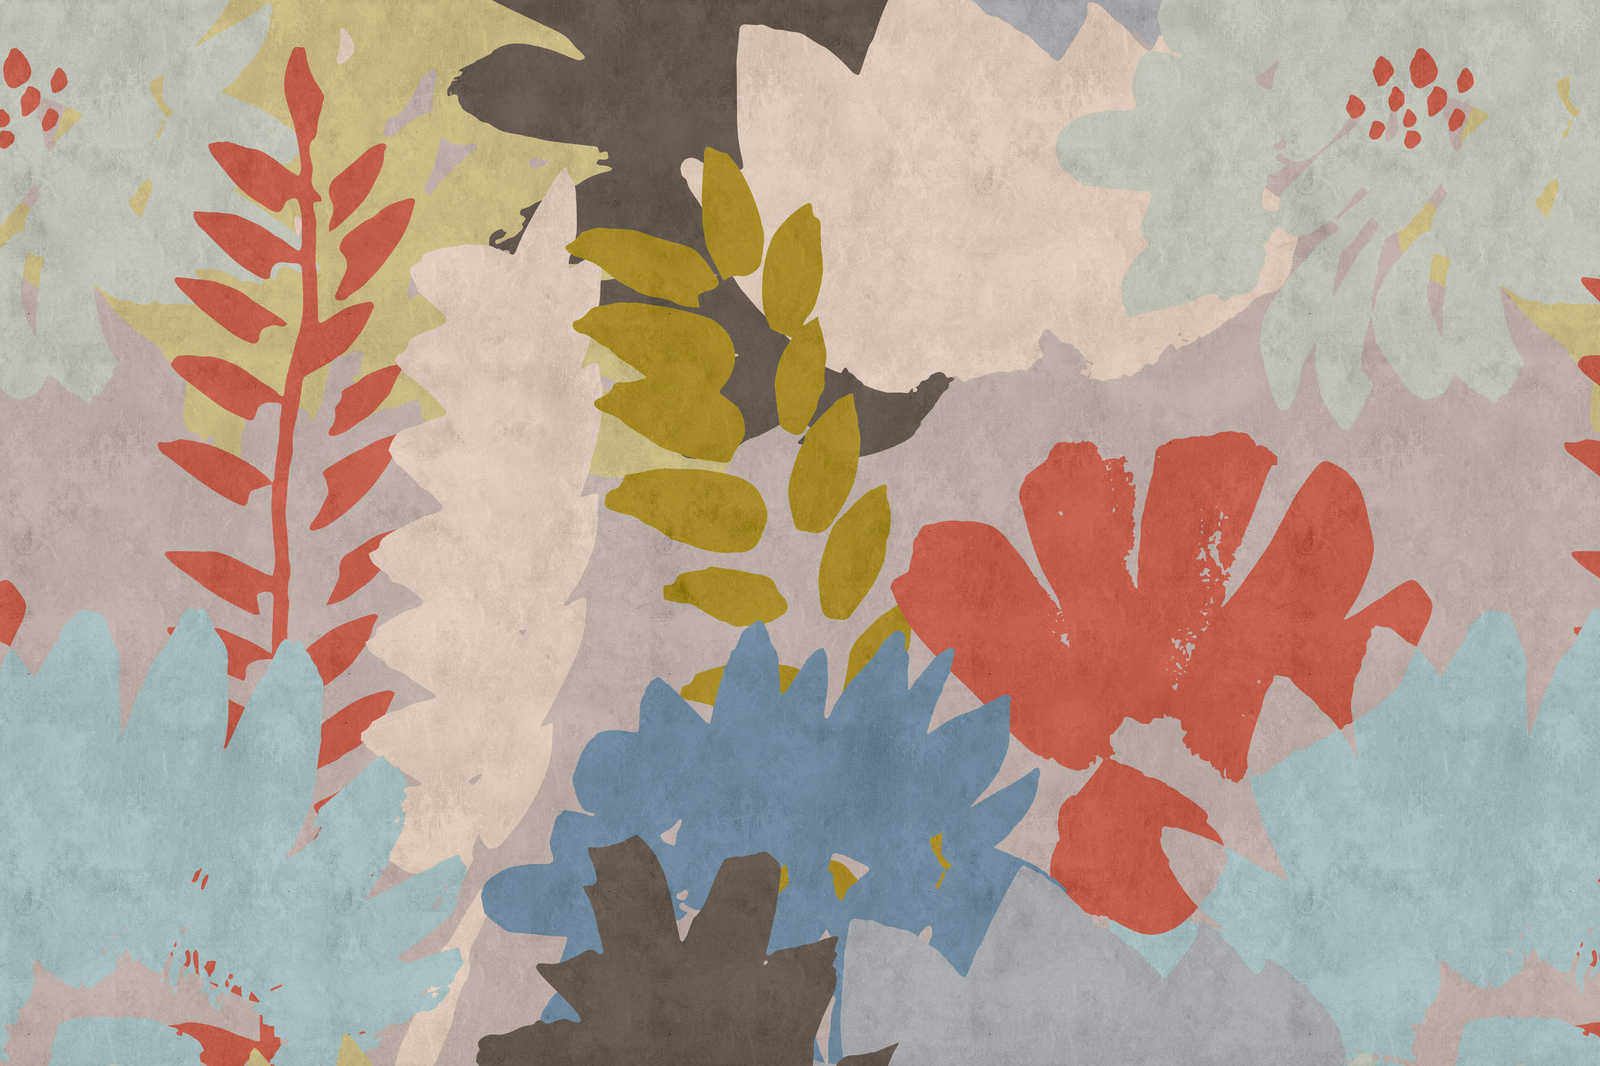             Floral Collage 3 - Tableau abstrait sur toile avec structure en papier buvard et motif de feuilles - 0,90 m x 0,60 m
        